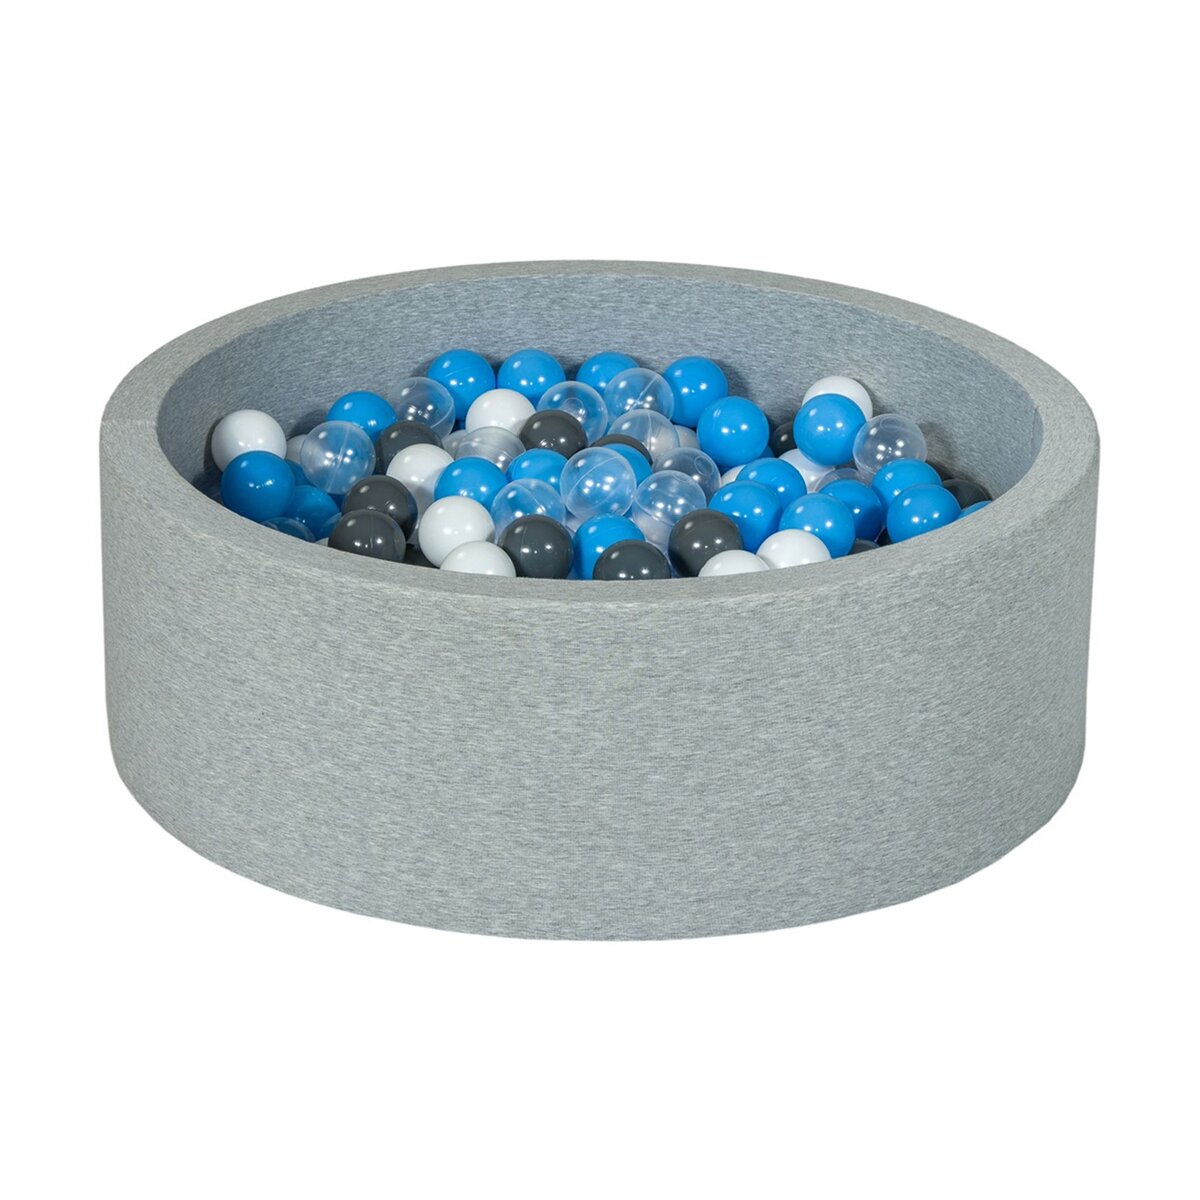  Piscine à balles Aire de jeu + 300 balles blanc, transparent, gris, bleu clair